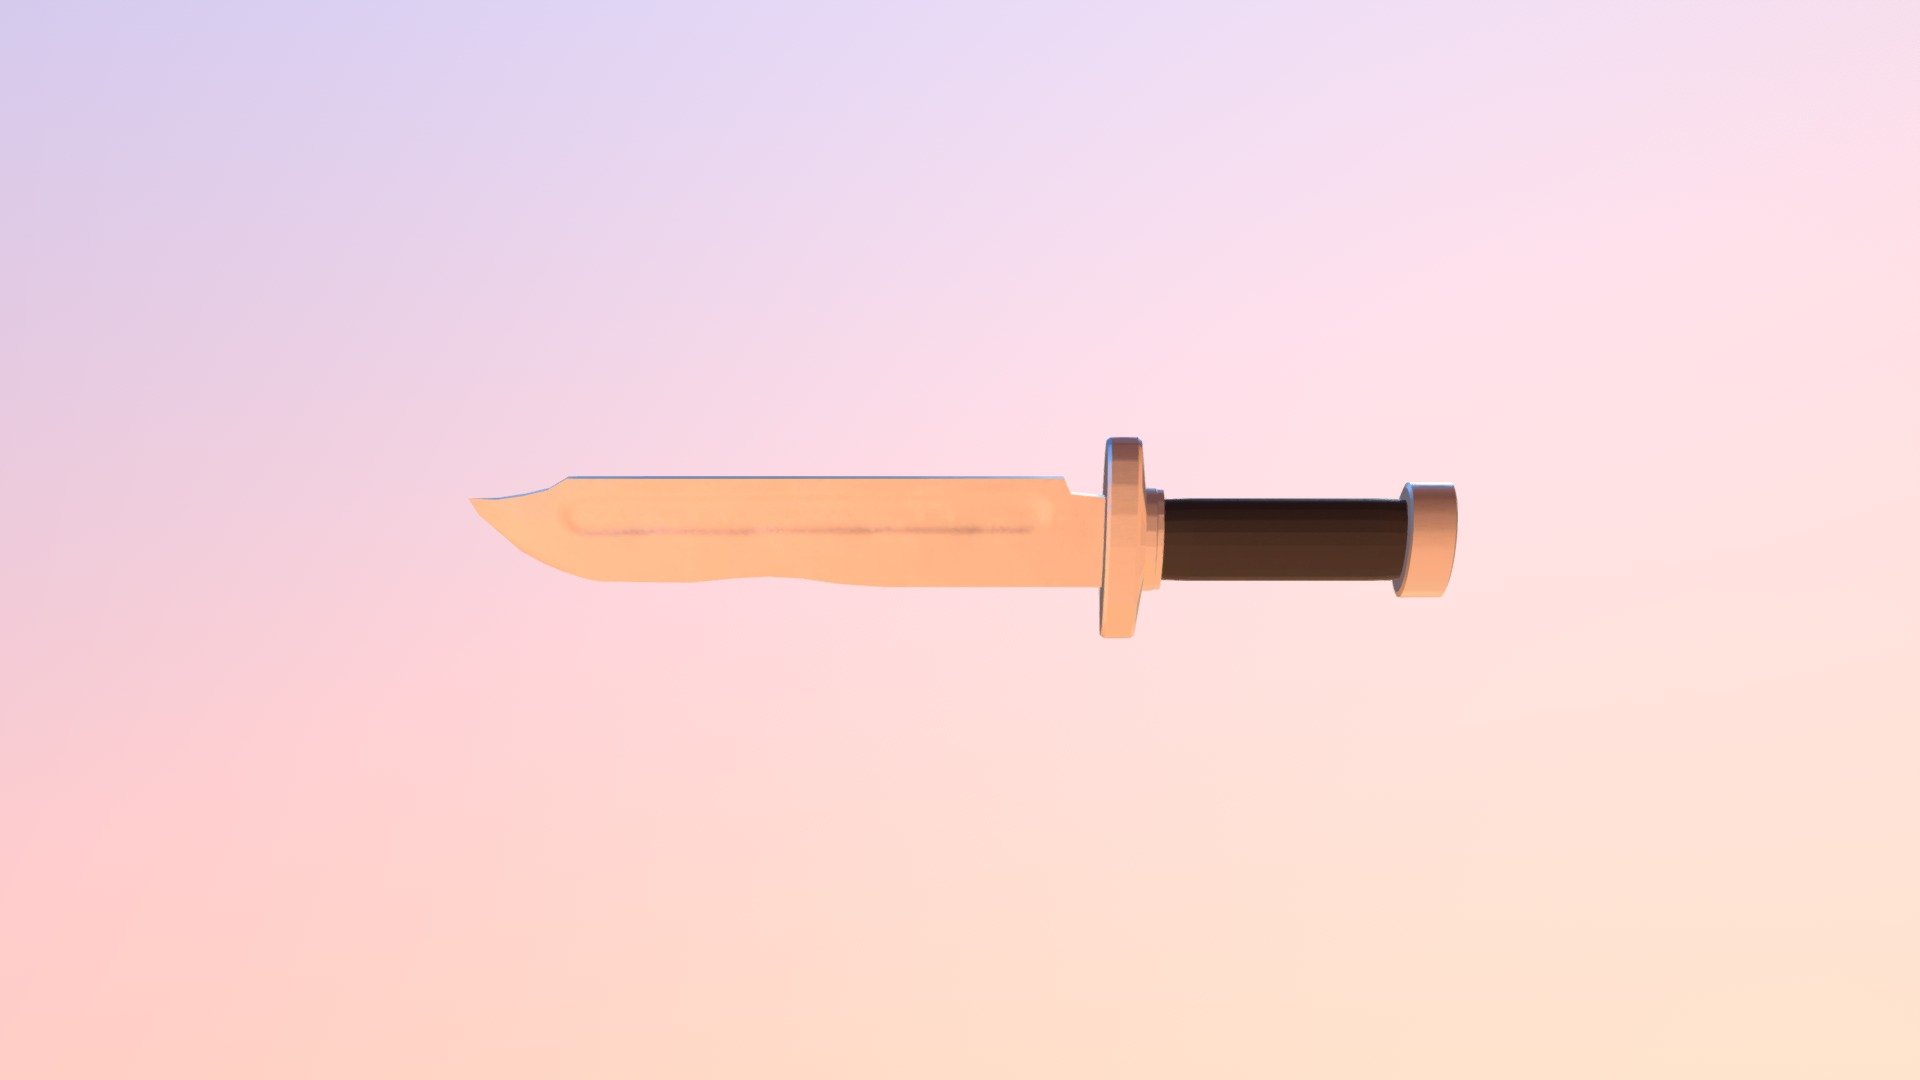 Knife no-scope